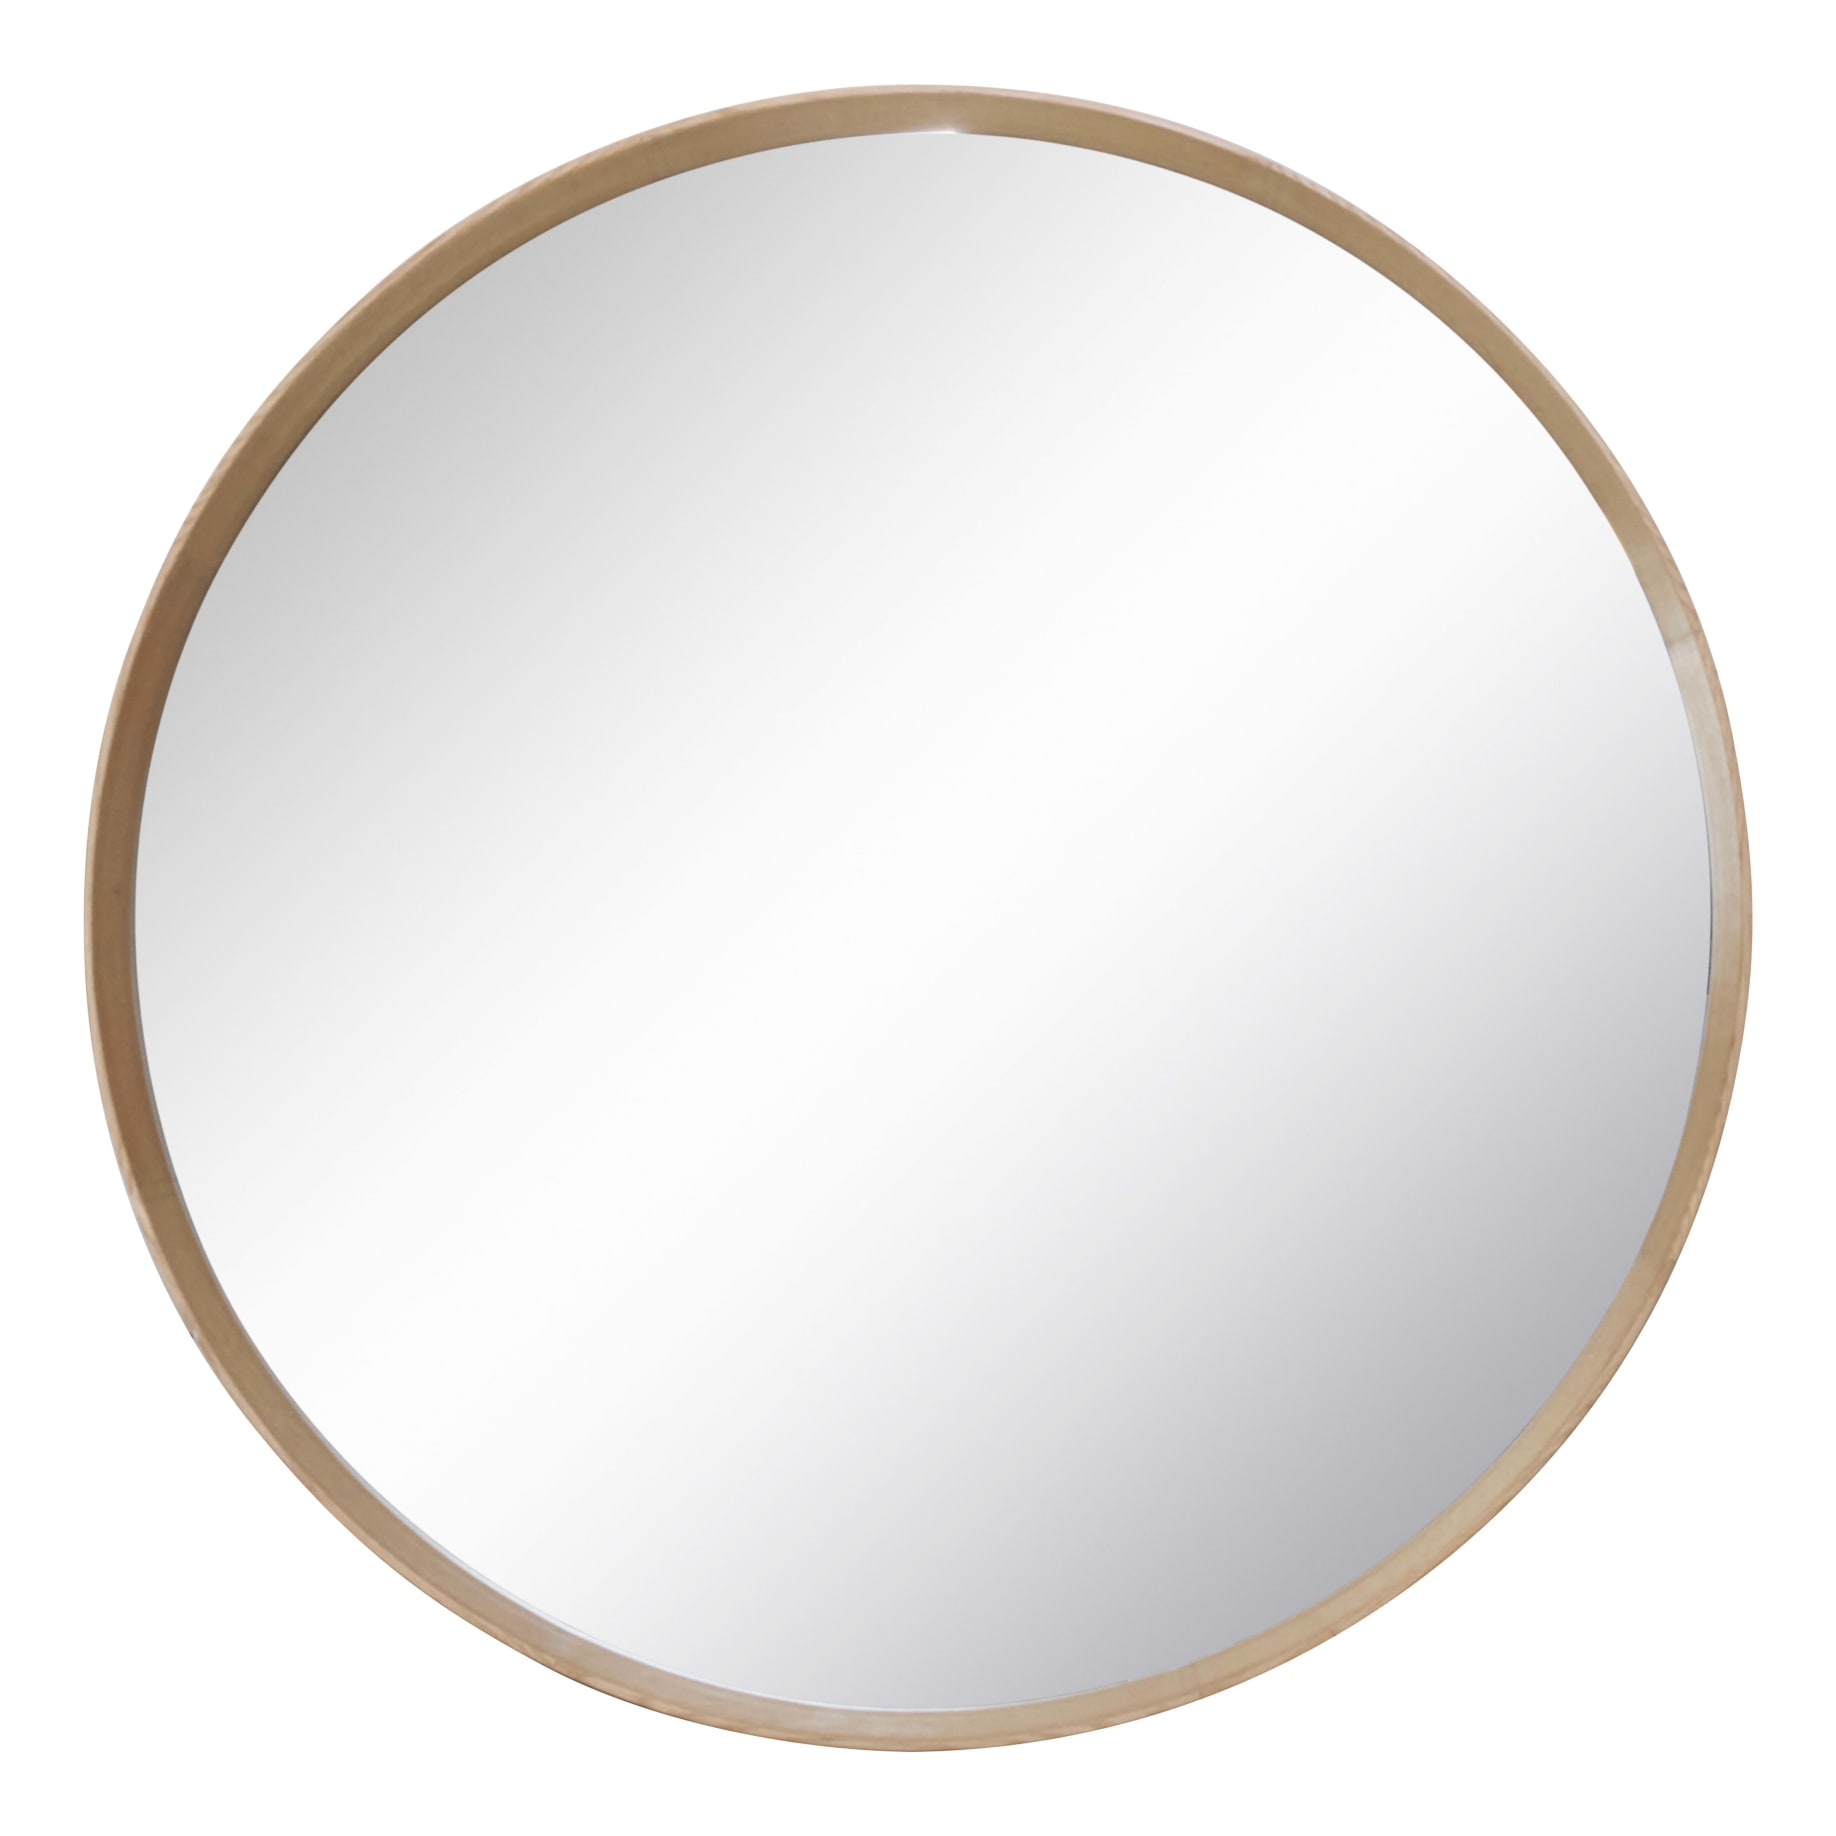 Benny Round Mirror 100cm in Natural Oak